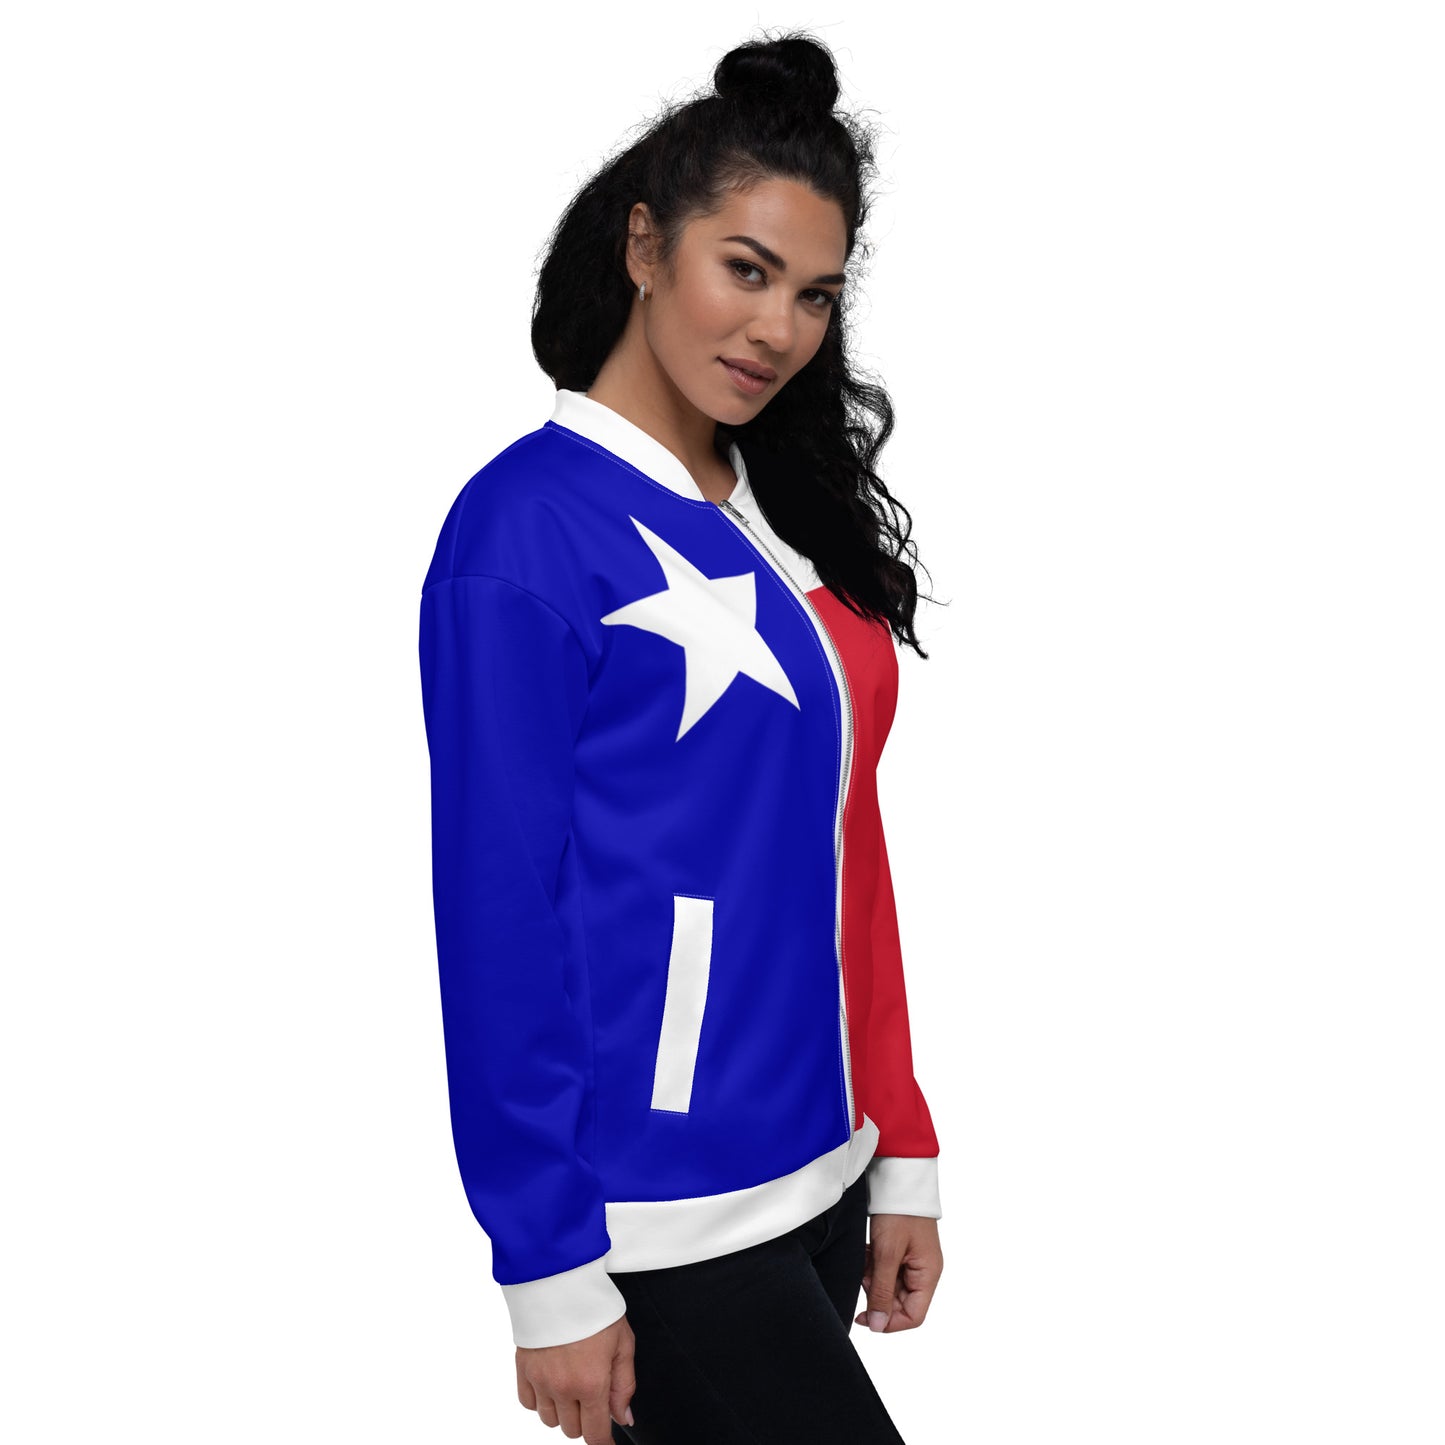 Chaqueta Texas / Chaqueta bomber unisex con colores de la bandera de Texas